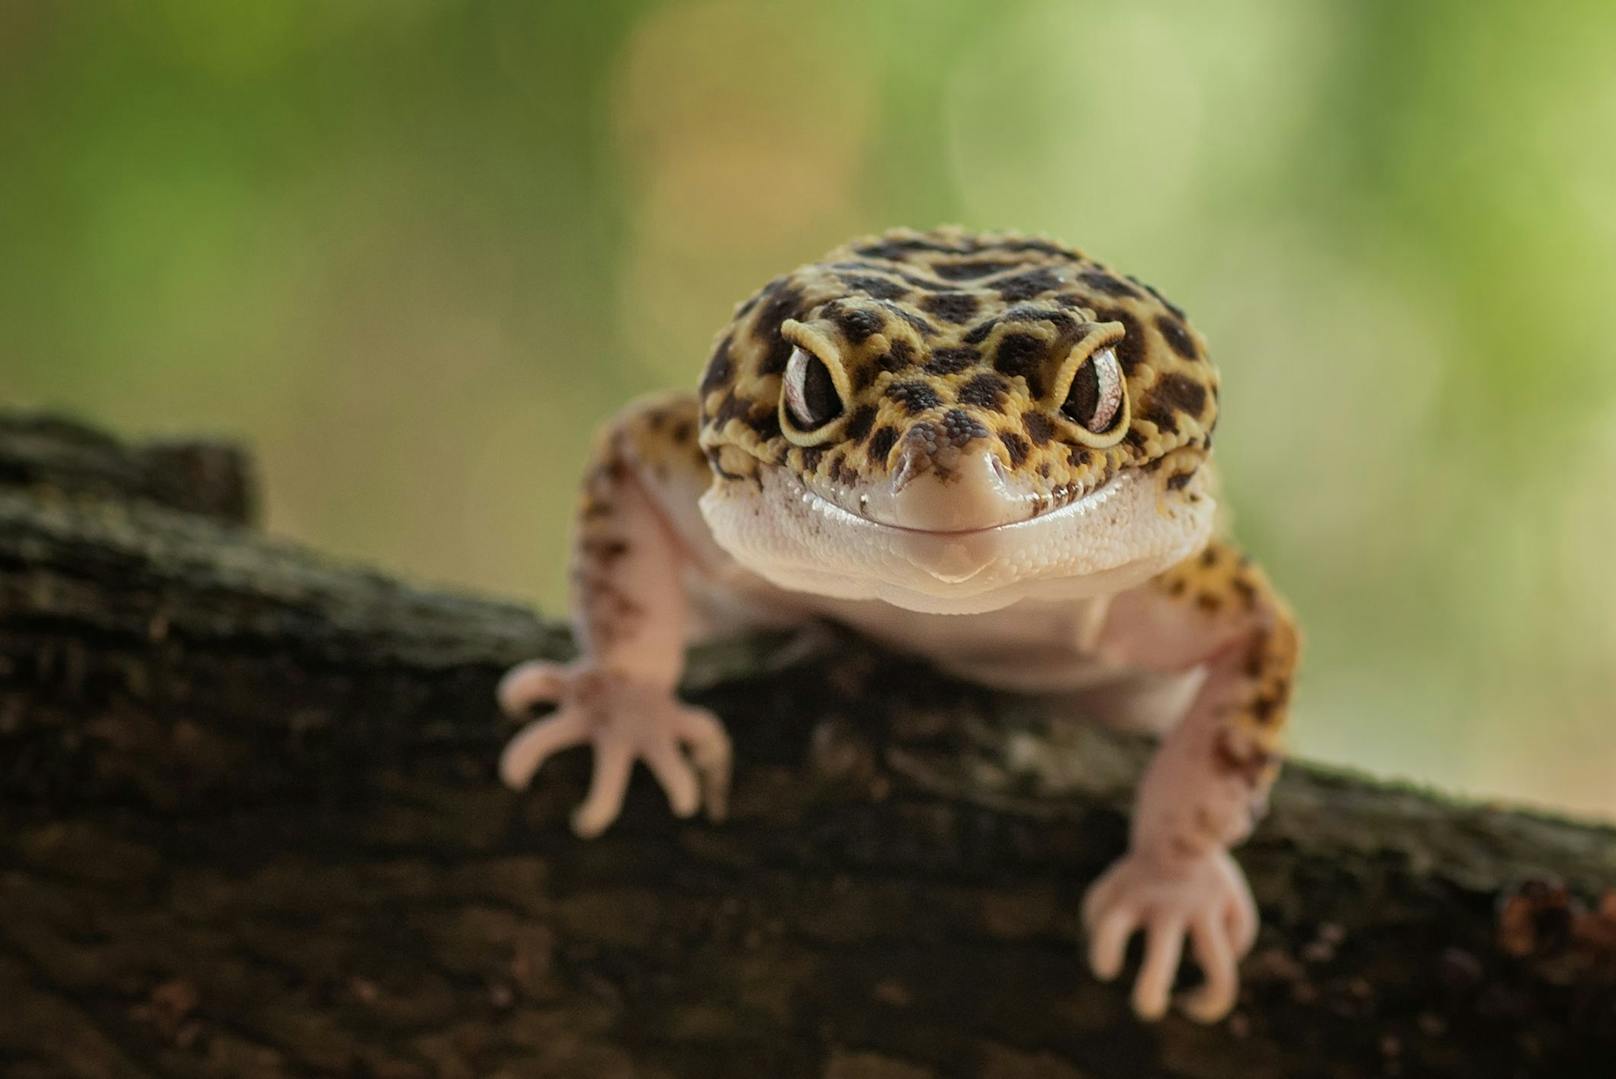 Wie auch die Eidechse, kann der Gecko bei Gefahr seinen Schwanz abwerfen, weshalb man ihn dort nie festhalten sollte.&nbsp;